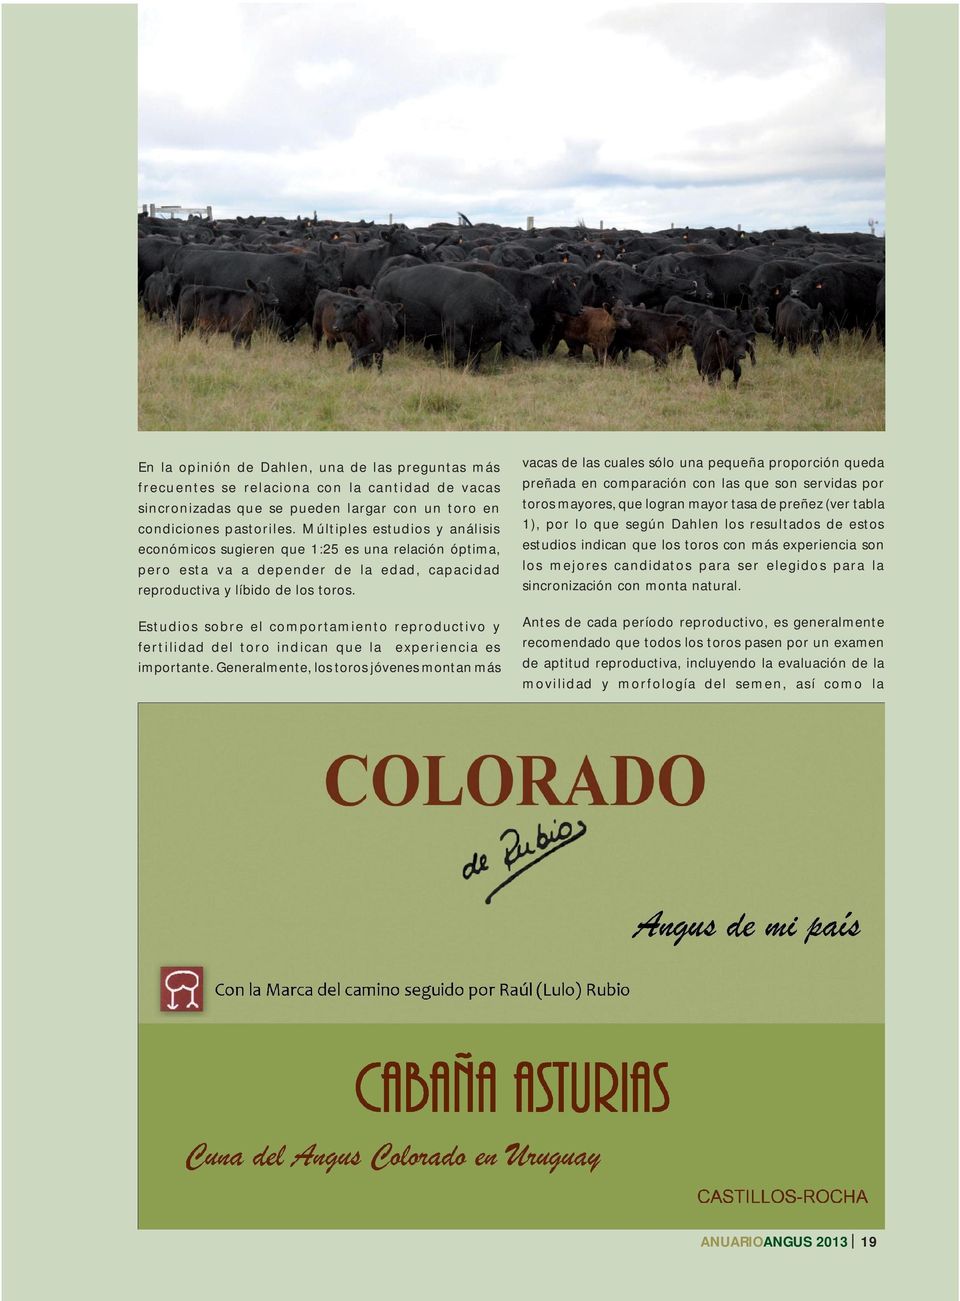 Estudios sobre el comportamiento reproductivo y fertilidad del toro indican que la experiencia es importante.